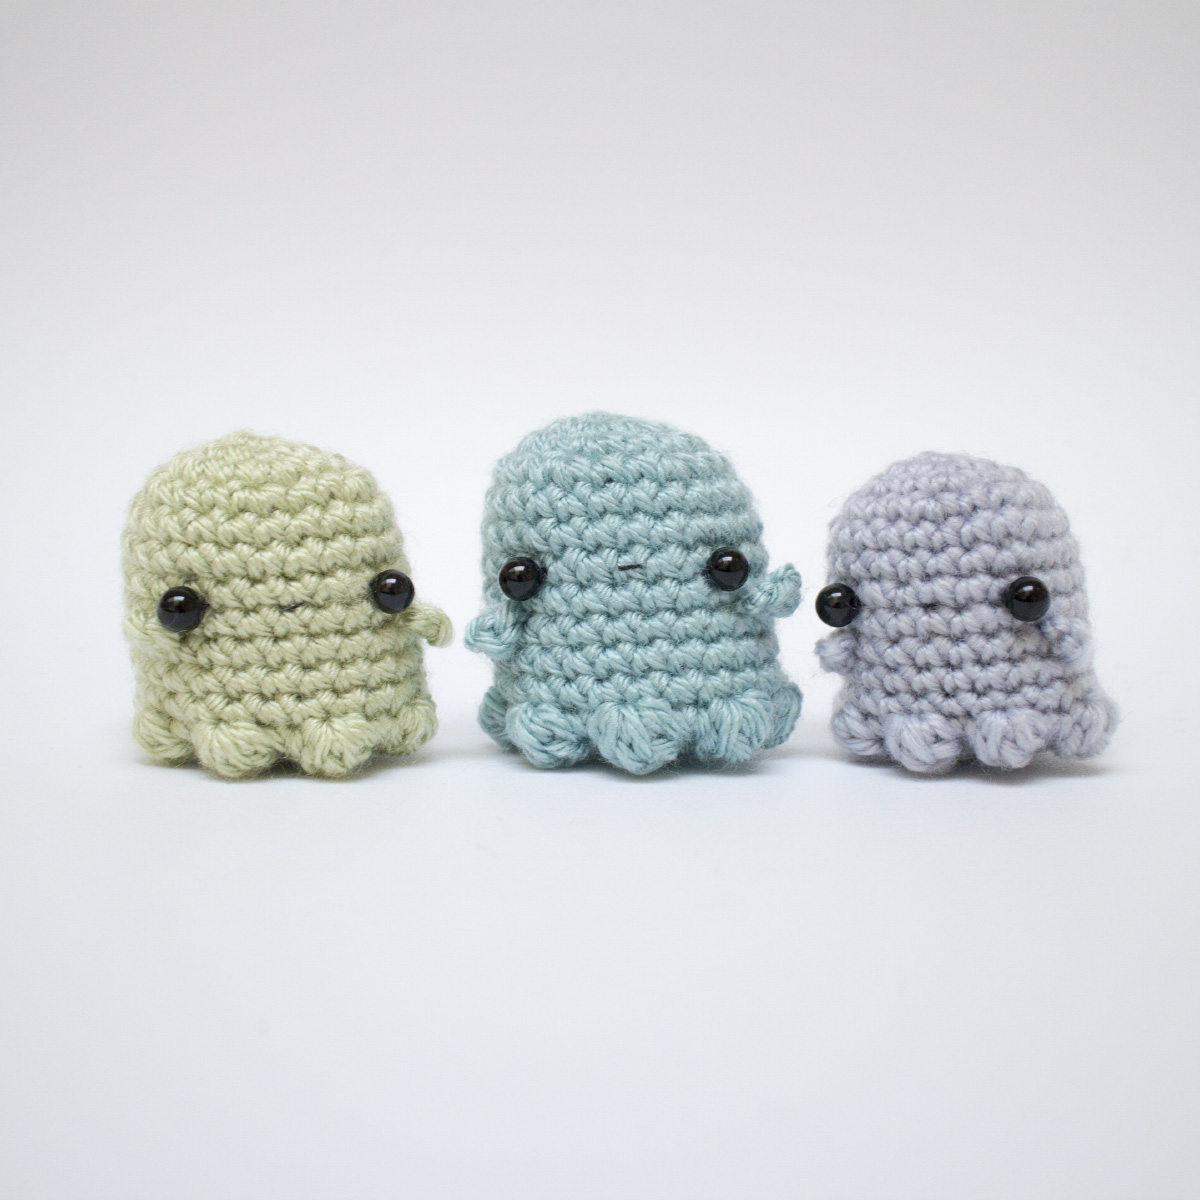 Mini ghost crochet pattern